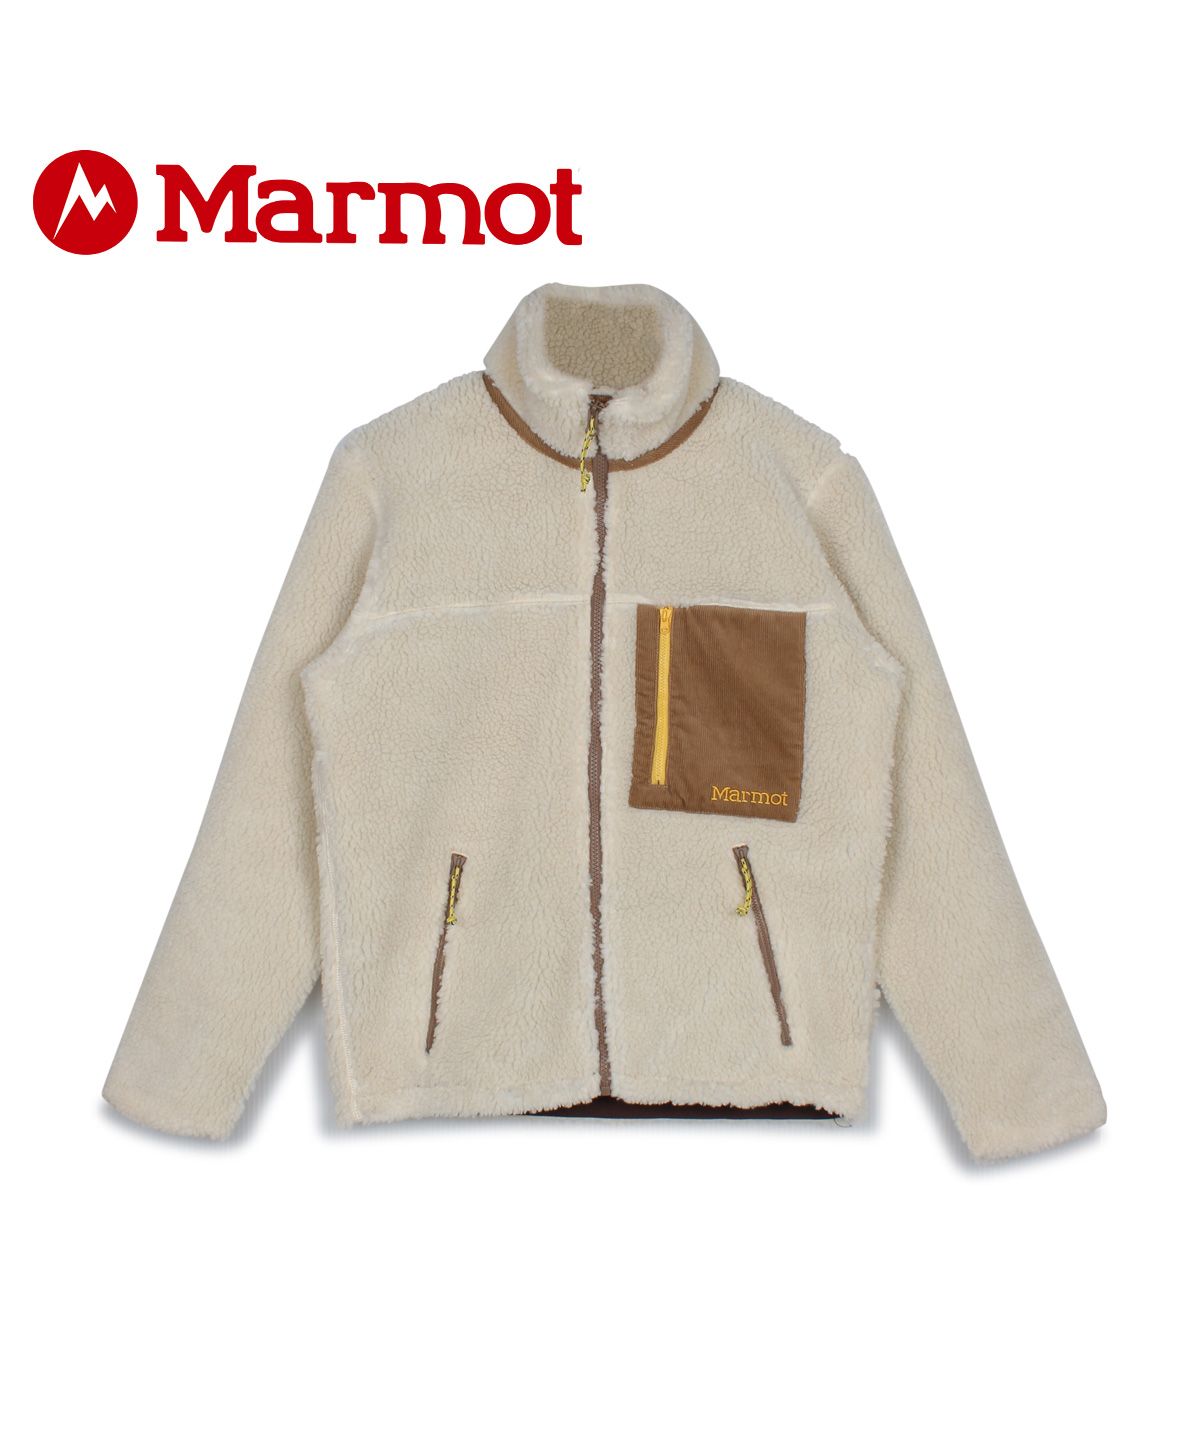 マーモット Marmot ジャケット フリースジャケット メンズ SHEEP FLEECE JACKET ベージュ TOMQJL40